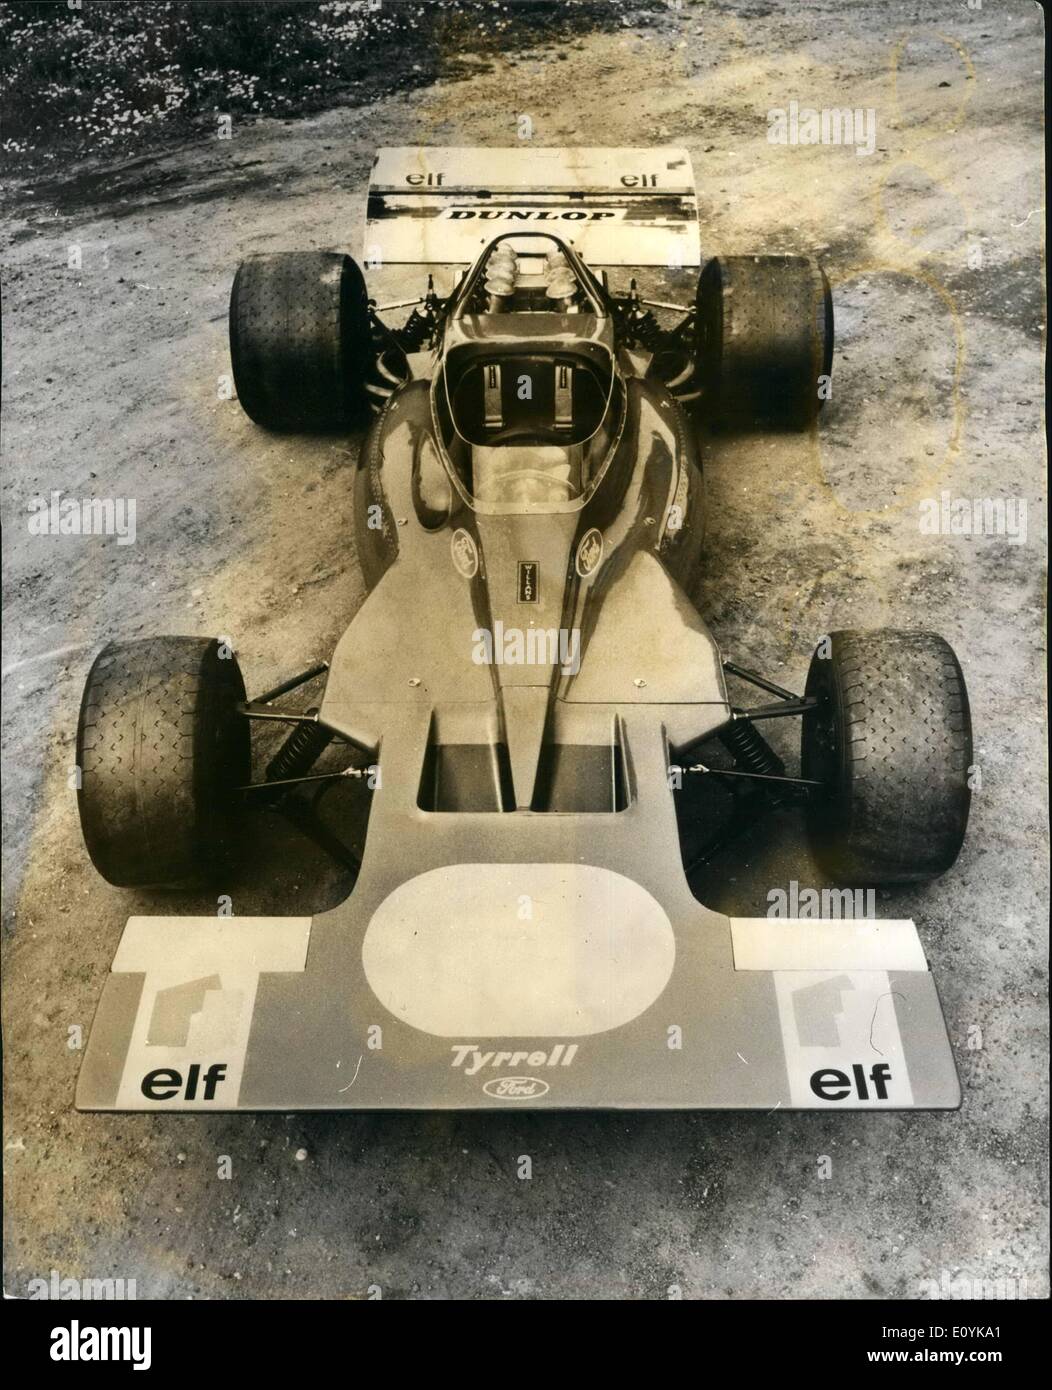 08 août 1970 - Nouvelle voiture Pour Jackie Stewart à Quiton. : pilote champion du monde Jackie Stewart est d'avoir une voiture nouvelle formule pour cette année, les quatre autres concurrents. La voiture - appelé la Tyrrell-Ford-est propulsée par un moteur Ford Cosworth V*, et fera ses débuts en Formule 1 dans l'Oulton Park Gold Cup International le samedi. Il donnera à Jackie Stewart son quatrième châssis Grand Prix en autant d'années. La voiture a été conçu par Derek Gardner, qui s'est joint à Ken Tyrrell de Ferguson Research Banque D'Images